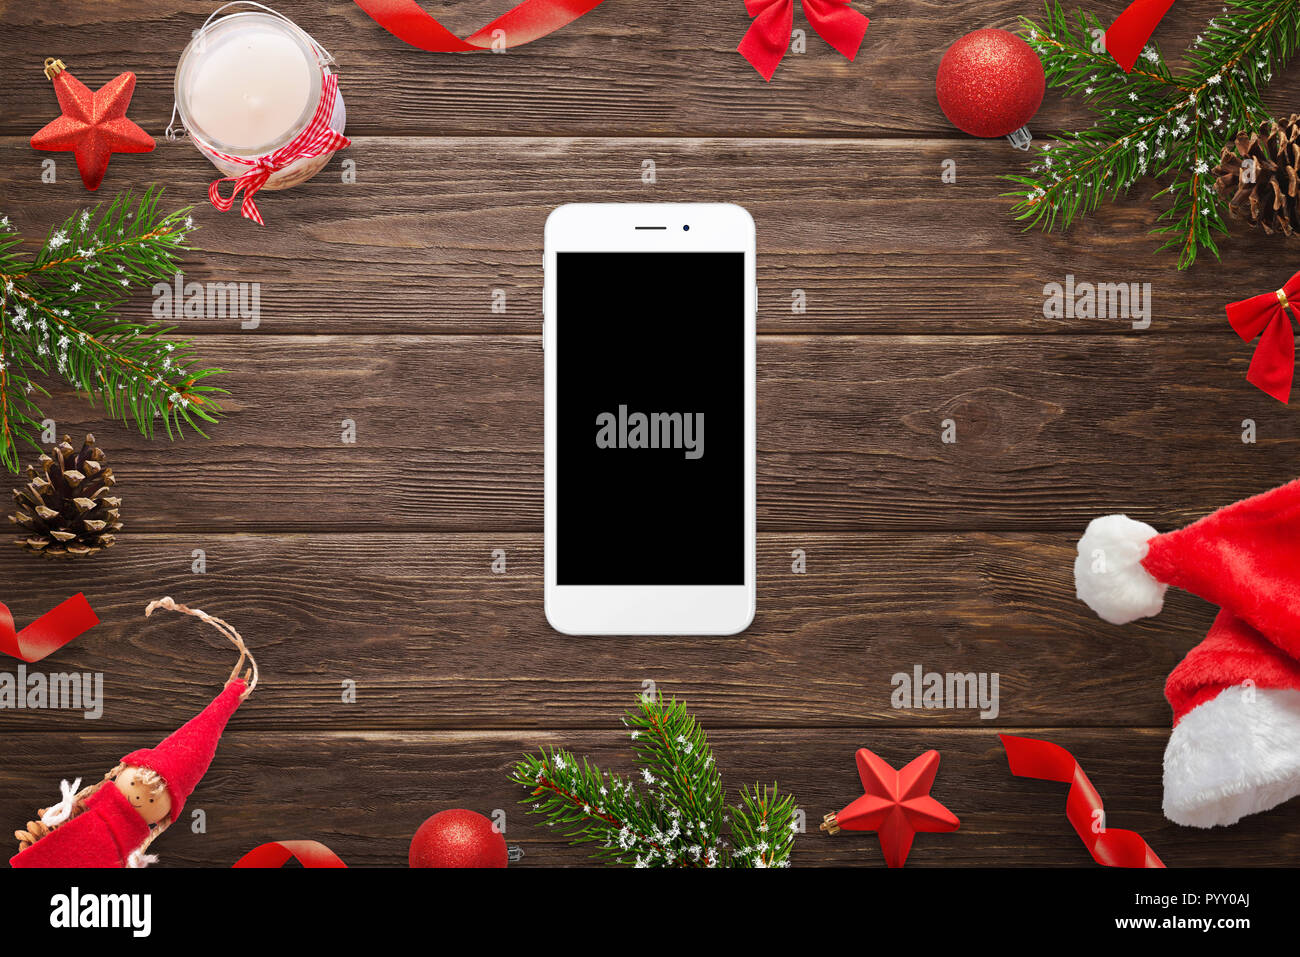 Smart phone immersive entouré de décorations de Noël sur la table en bois. Vue supérieure de la scène. Banque D'Images